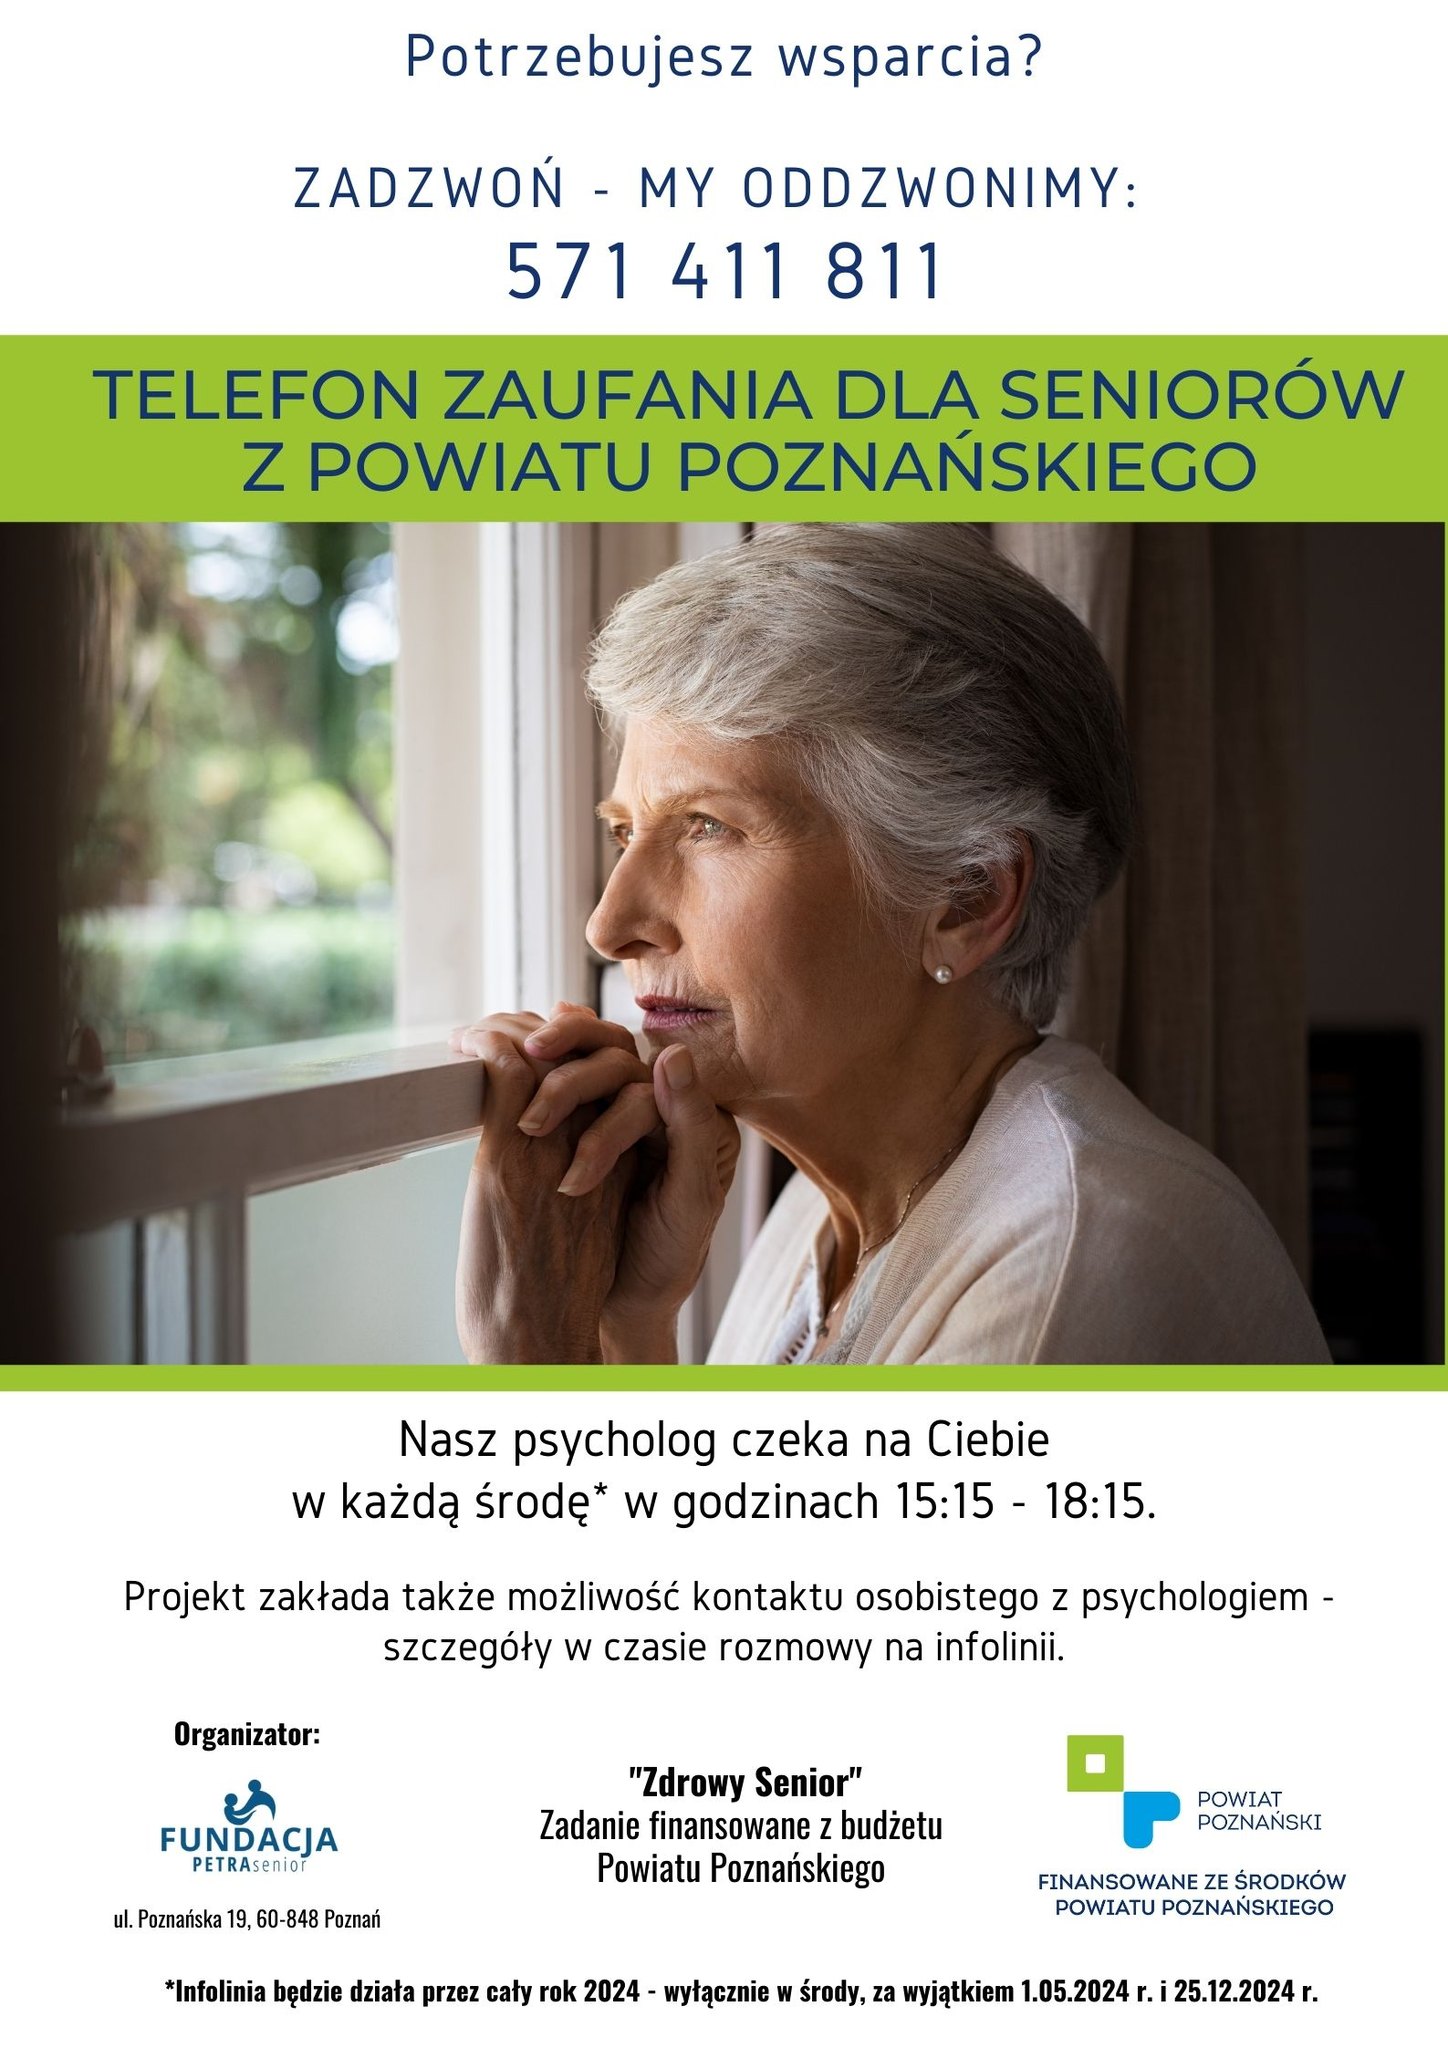 Zapraszamy do korzystania ze wsparcia psychologicznego realizowanego w ramach zadania Zdrowy Senior.